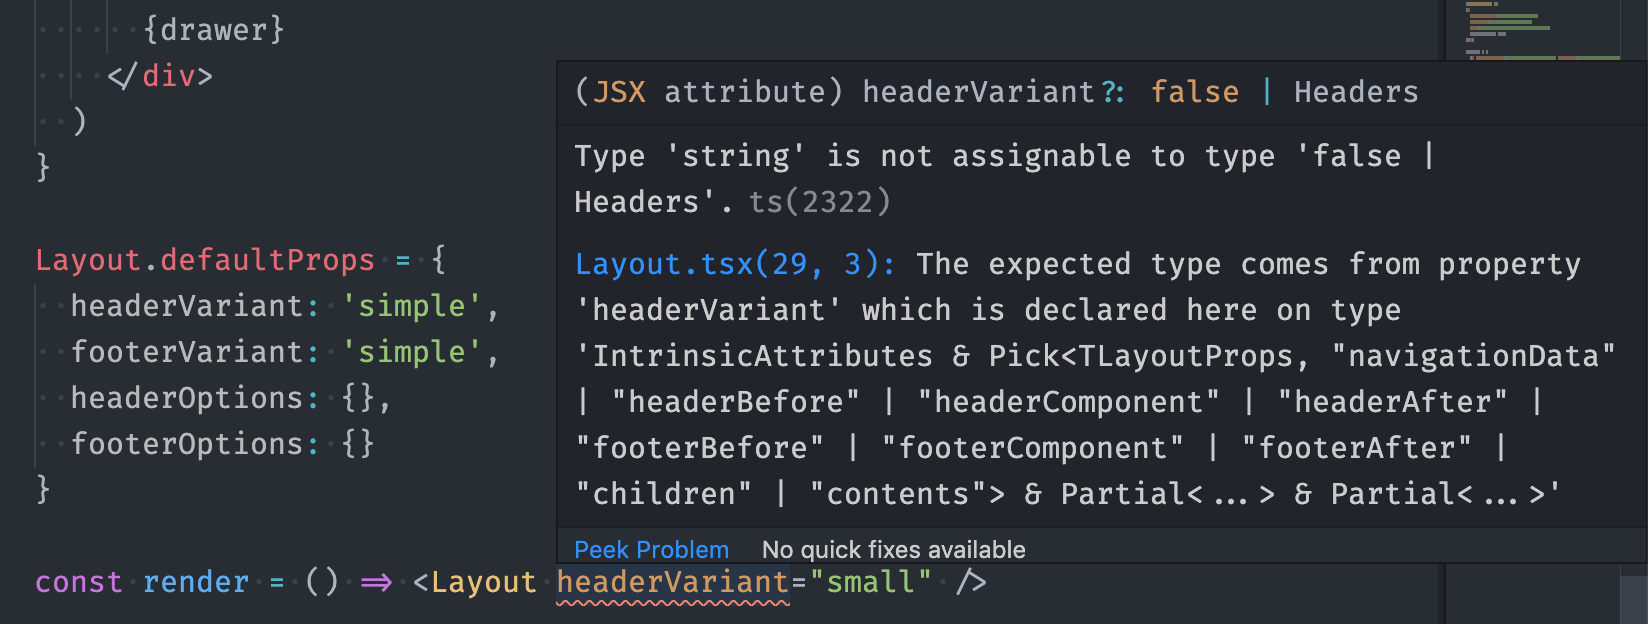 A screenshot of a confusing TypeScript error